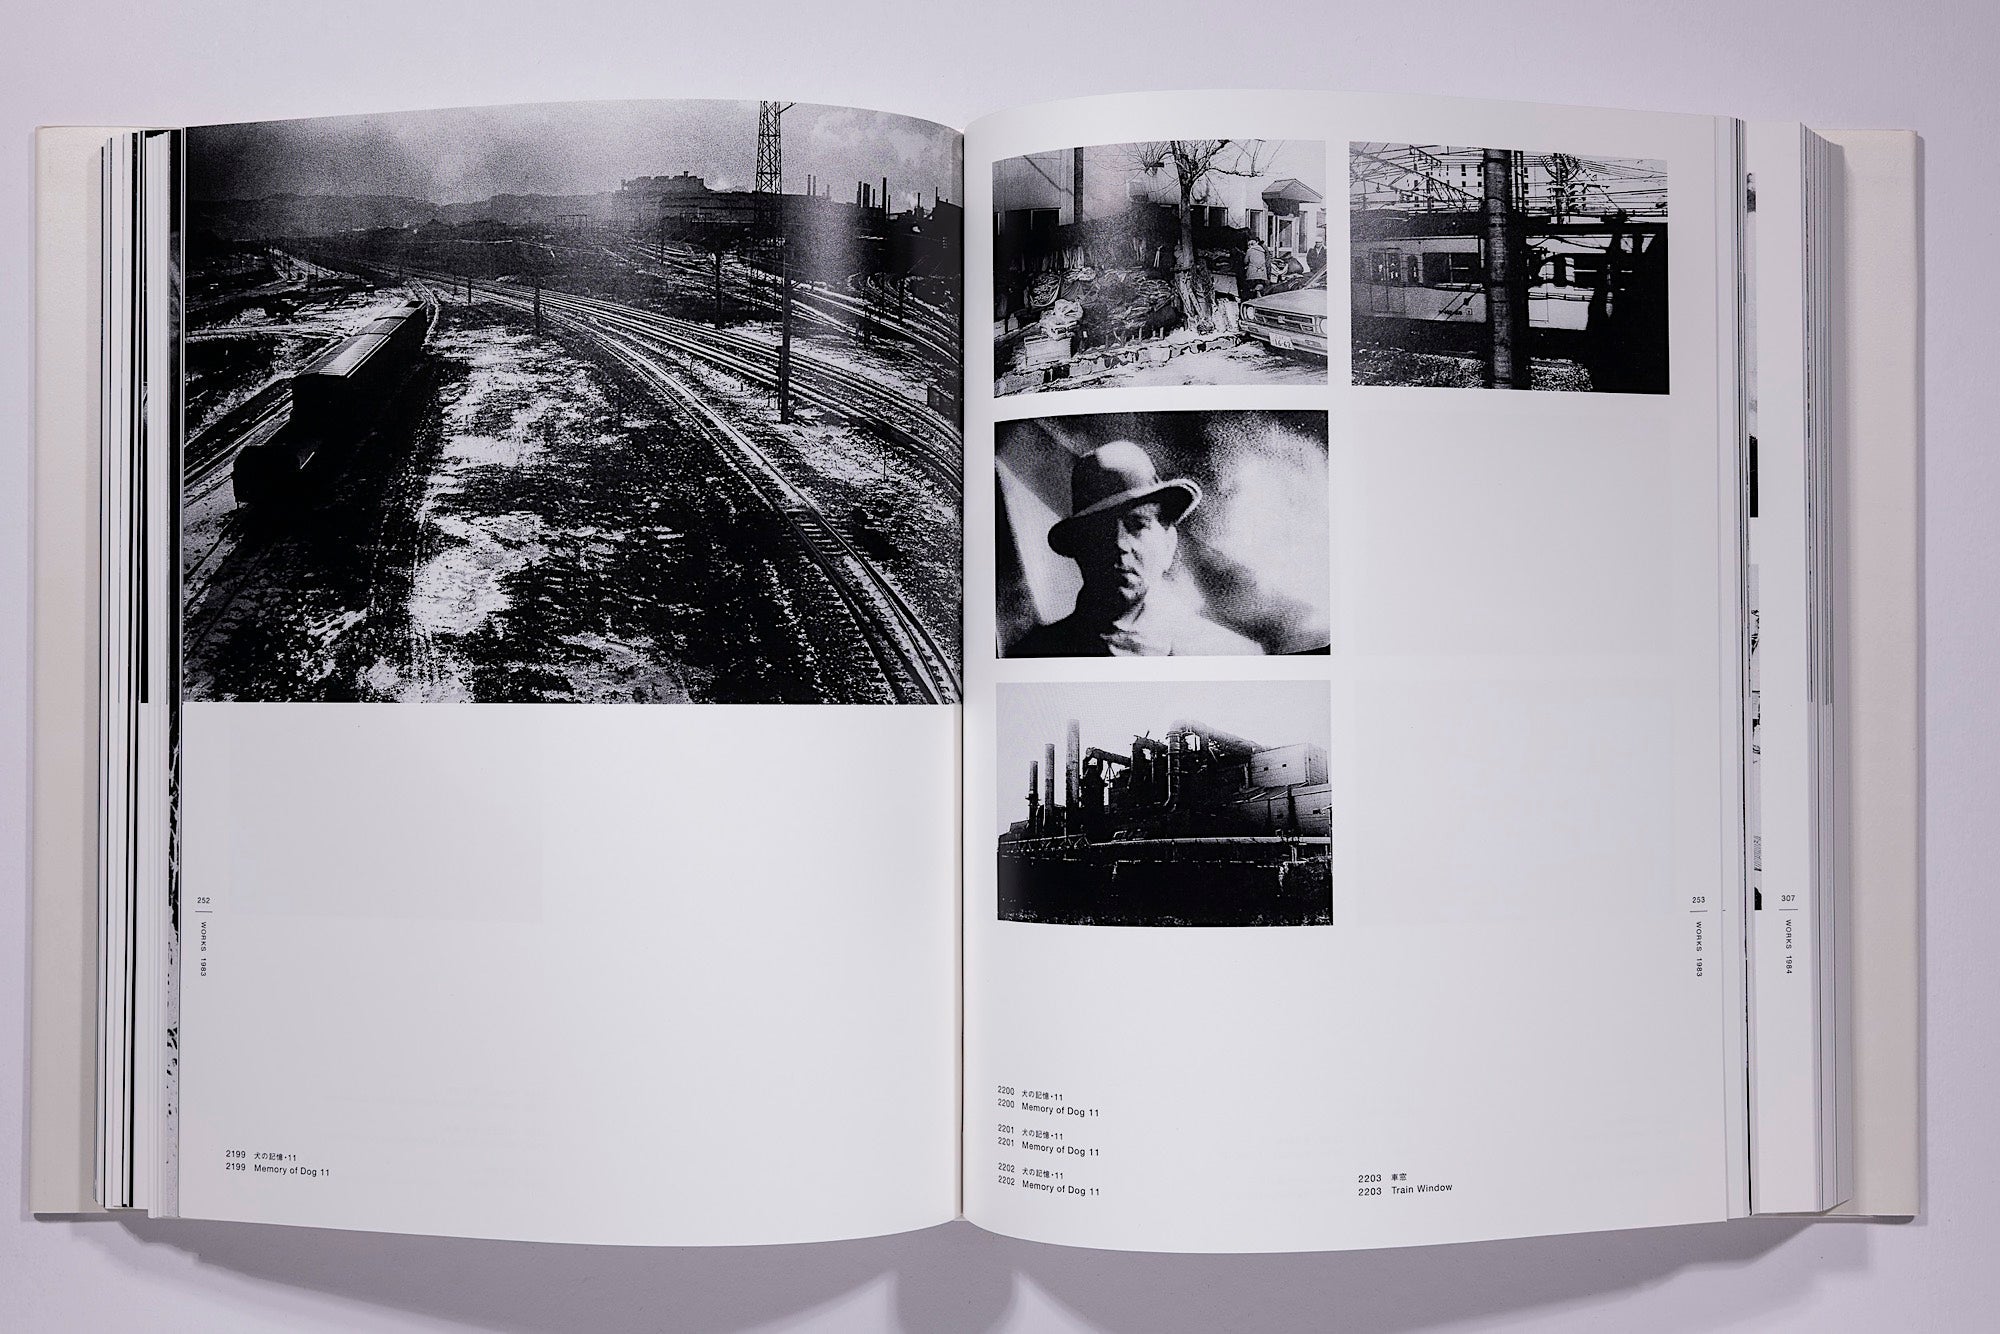 Daido Moriyama - The Complete Works of Daido Moriyama